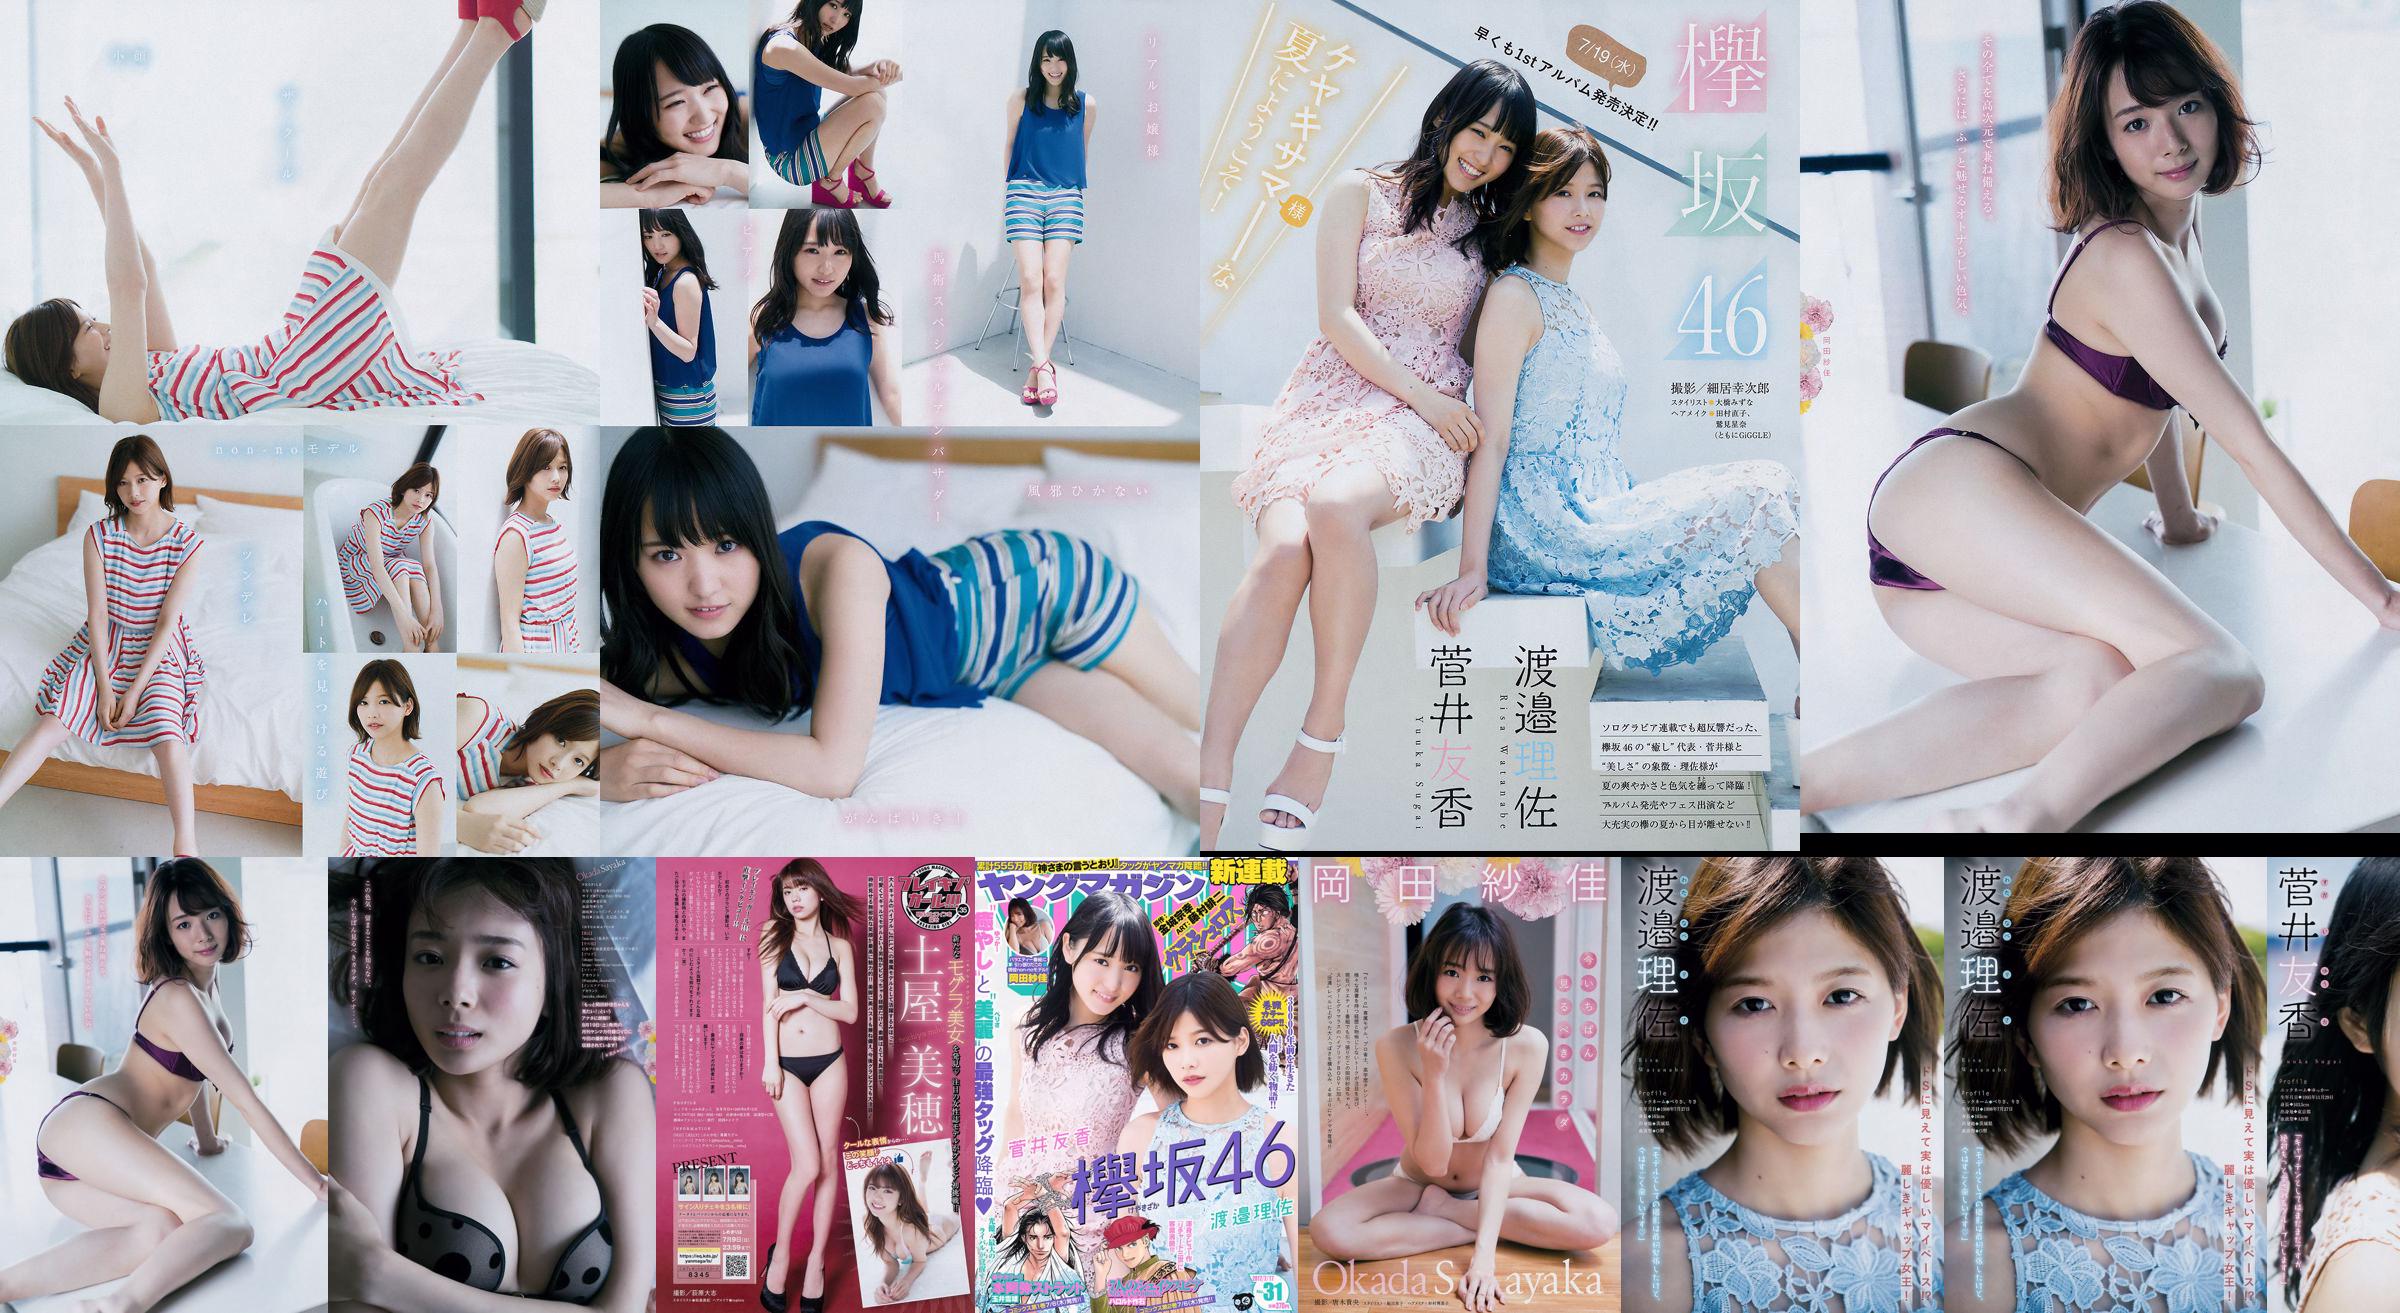 [Young Magazine] Watanabe Risa, Sugai Yuka, Okada Saika 2017 No.31 Photo Magazine No.daba66 Page 4